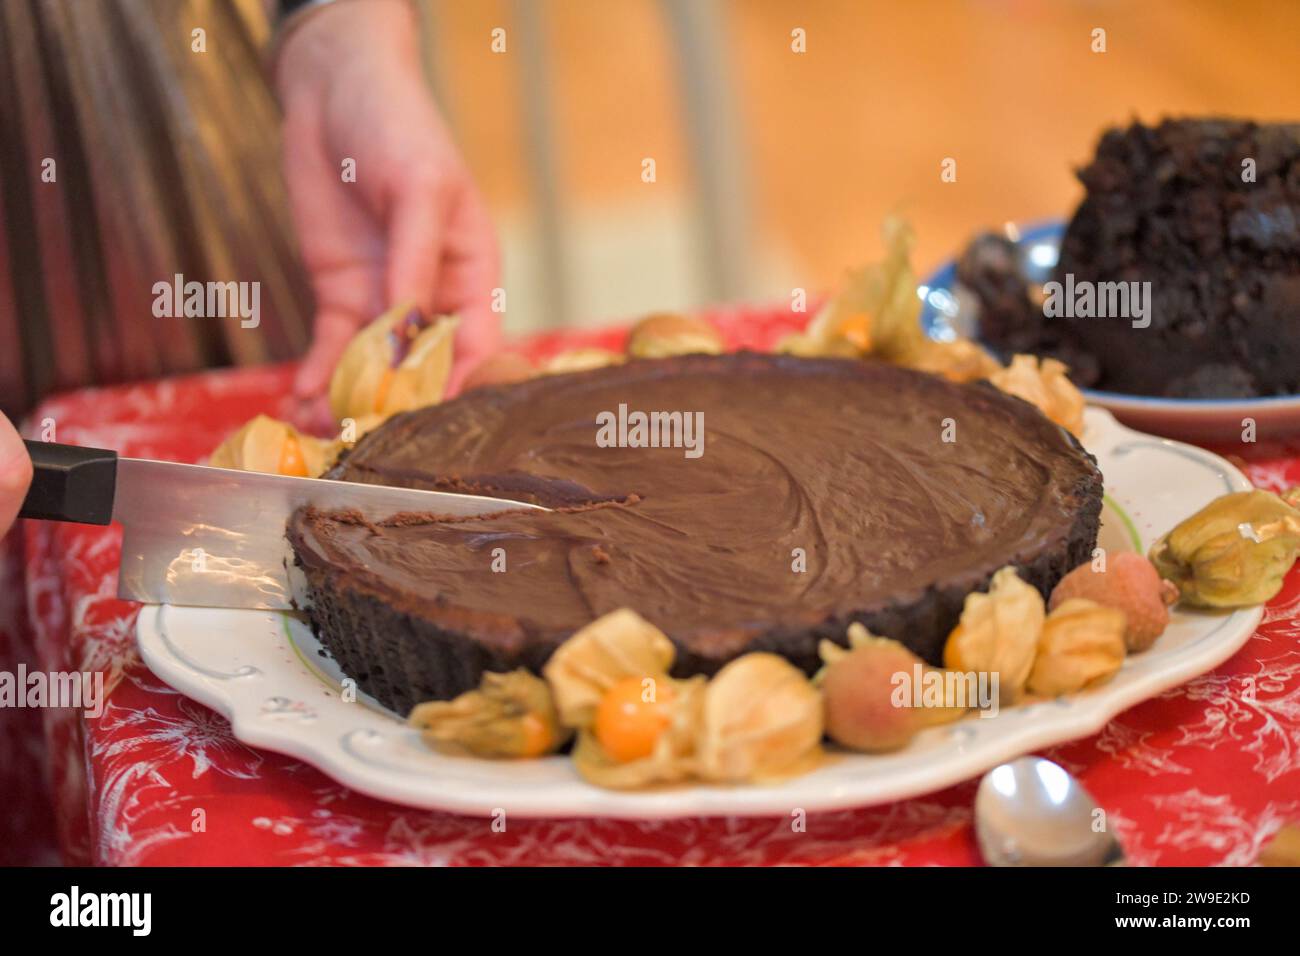 Una ricca torta al formaggio al cioccolato tagliata a fette, con frutti di manzo e litchi circondano il piatto per decorarlo Foto Stock